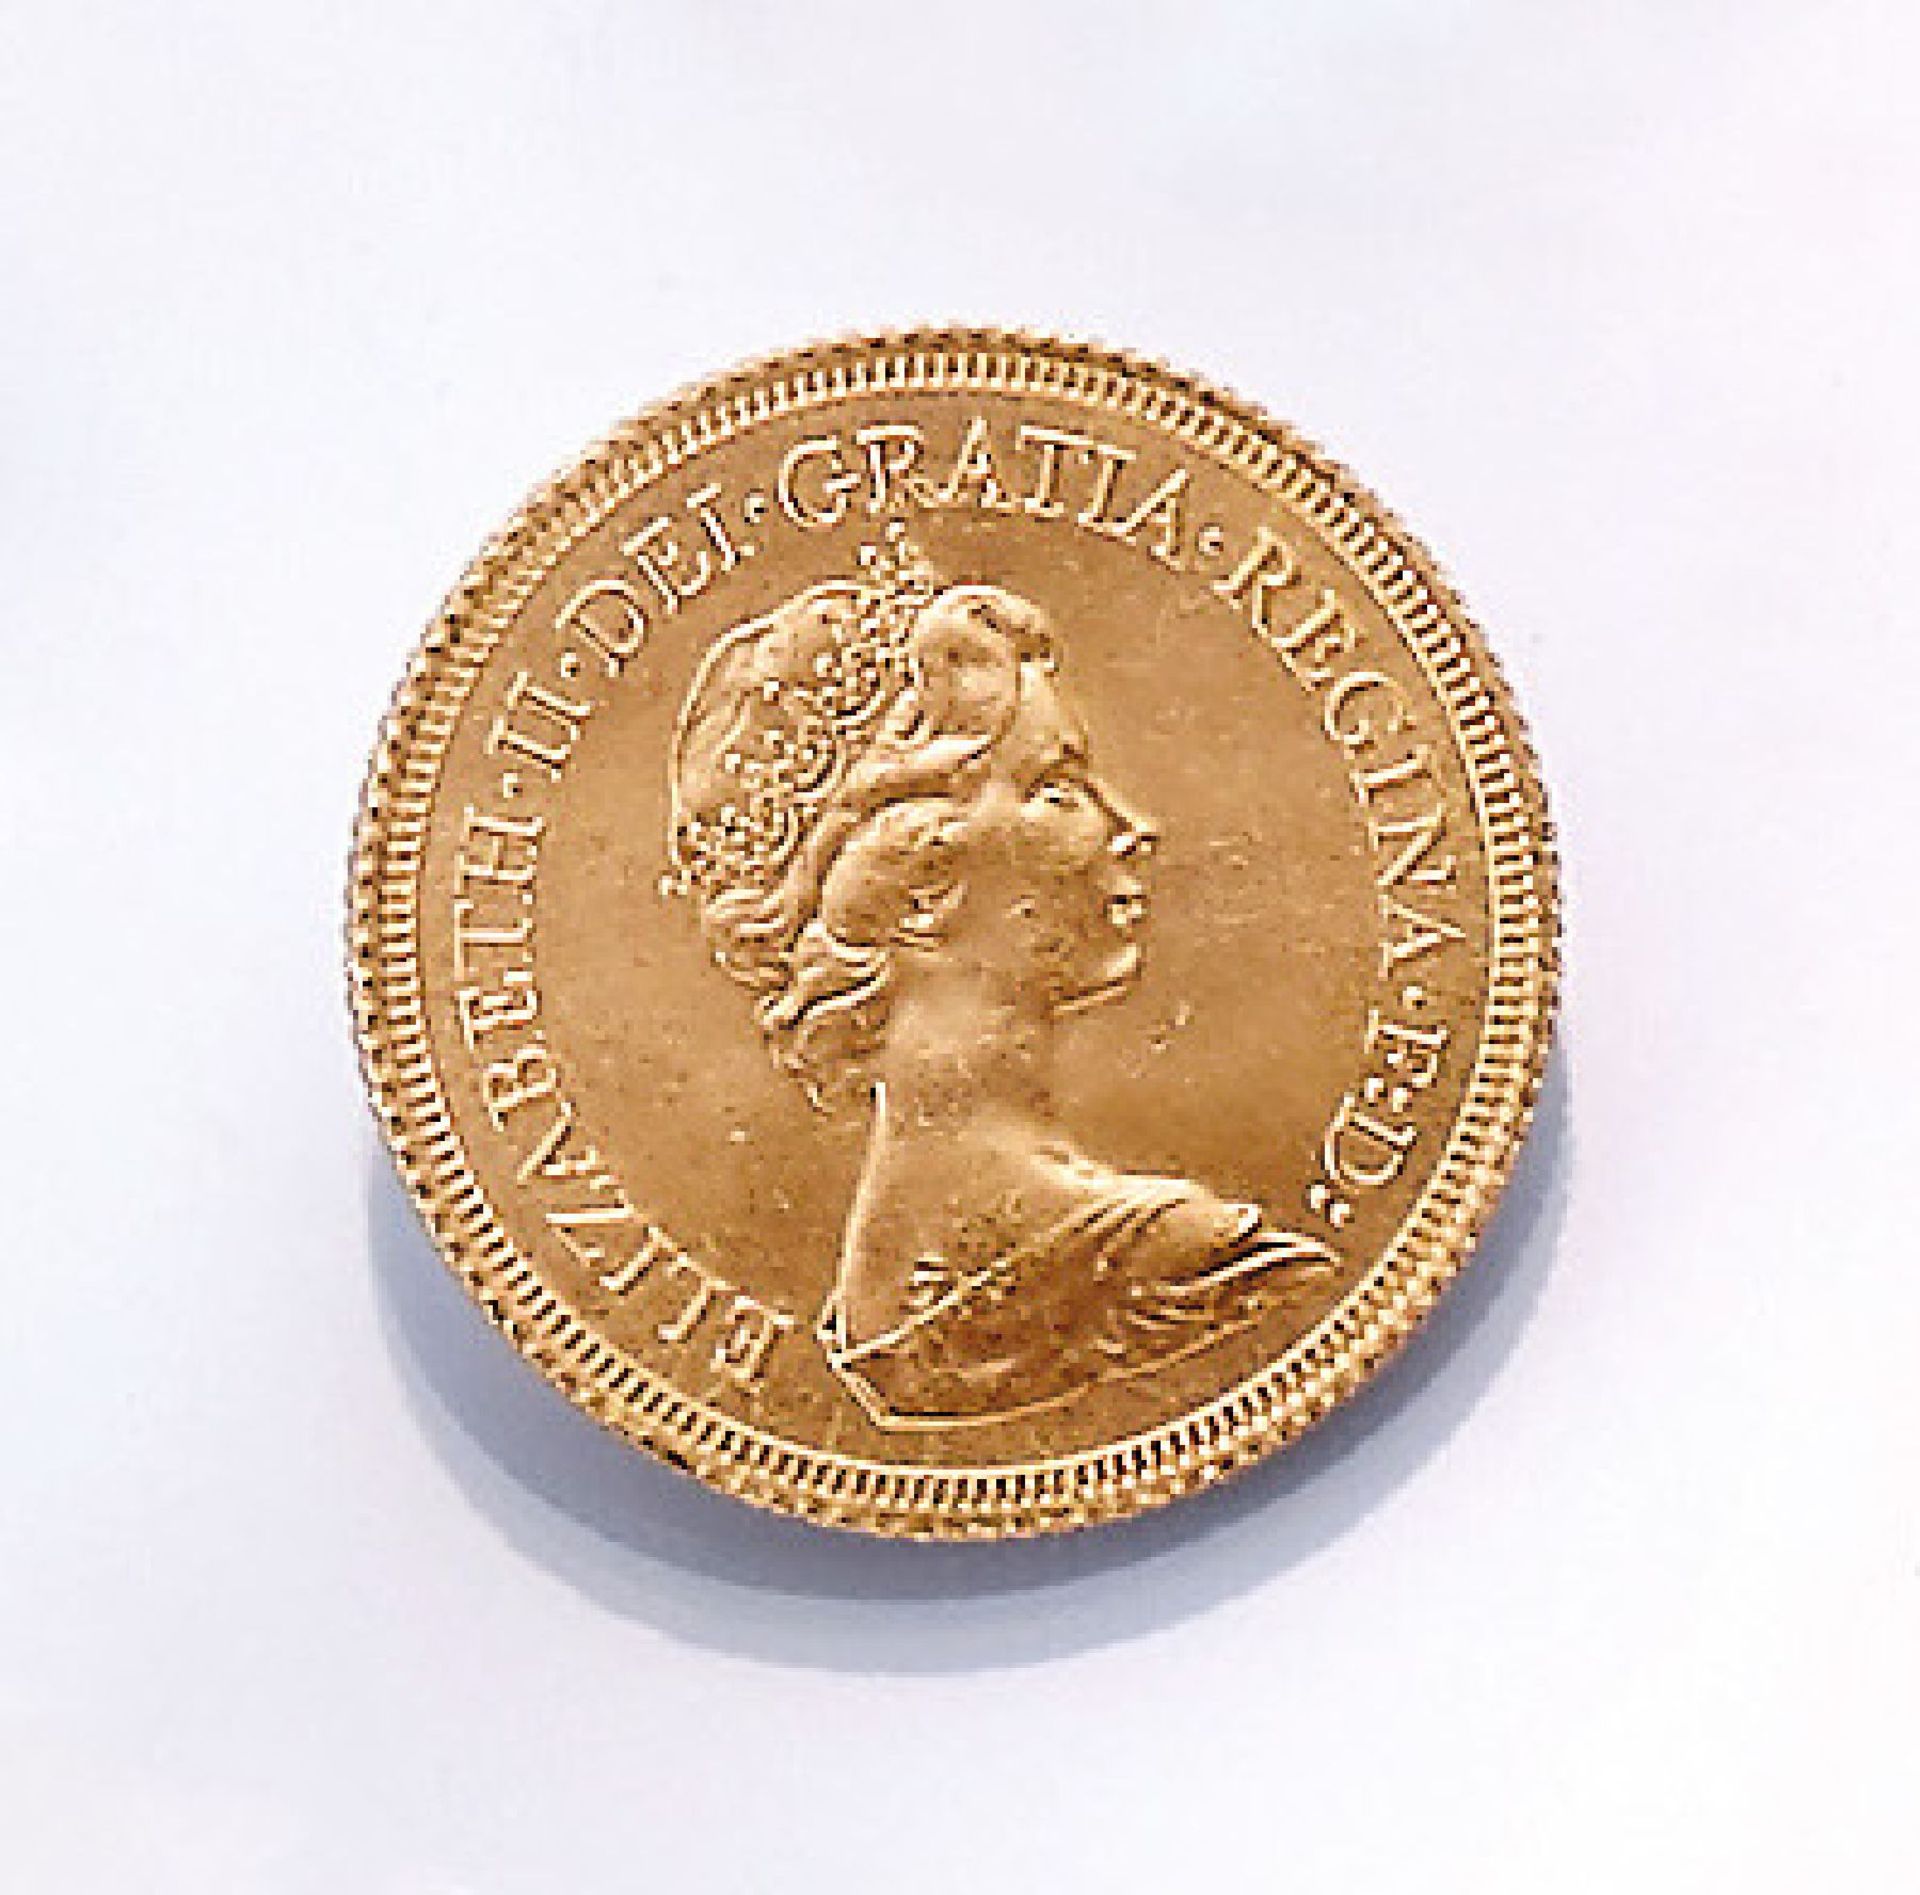 Goldmünze, Sovereign, Großbritannien, 1979, Elizabeth II., RV: Heiliger Georg hoch zu Ross im